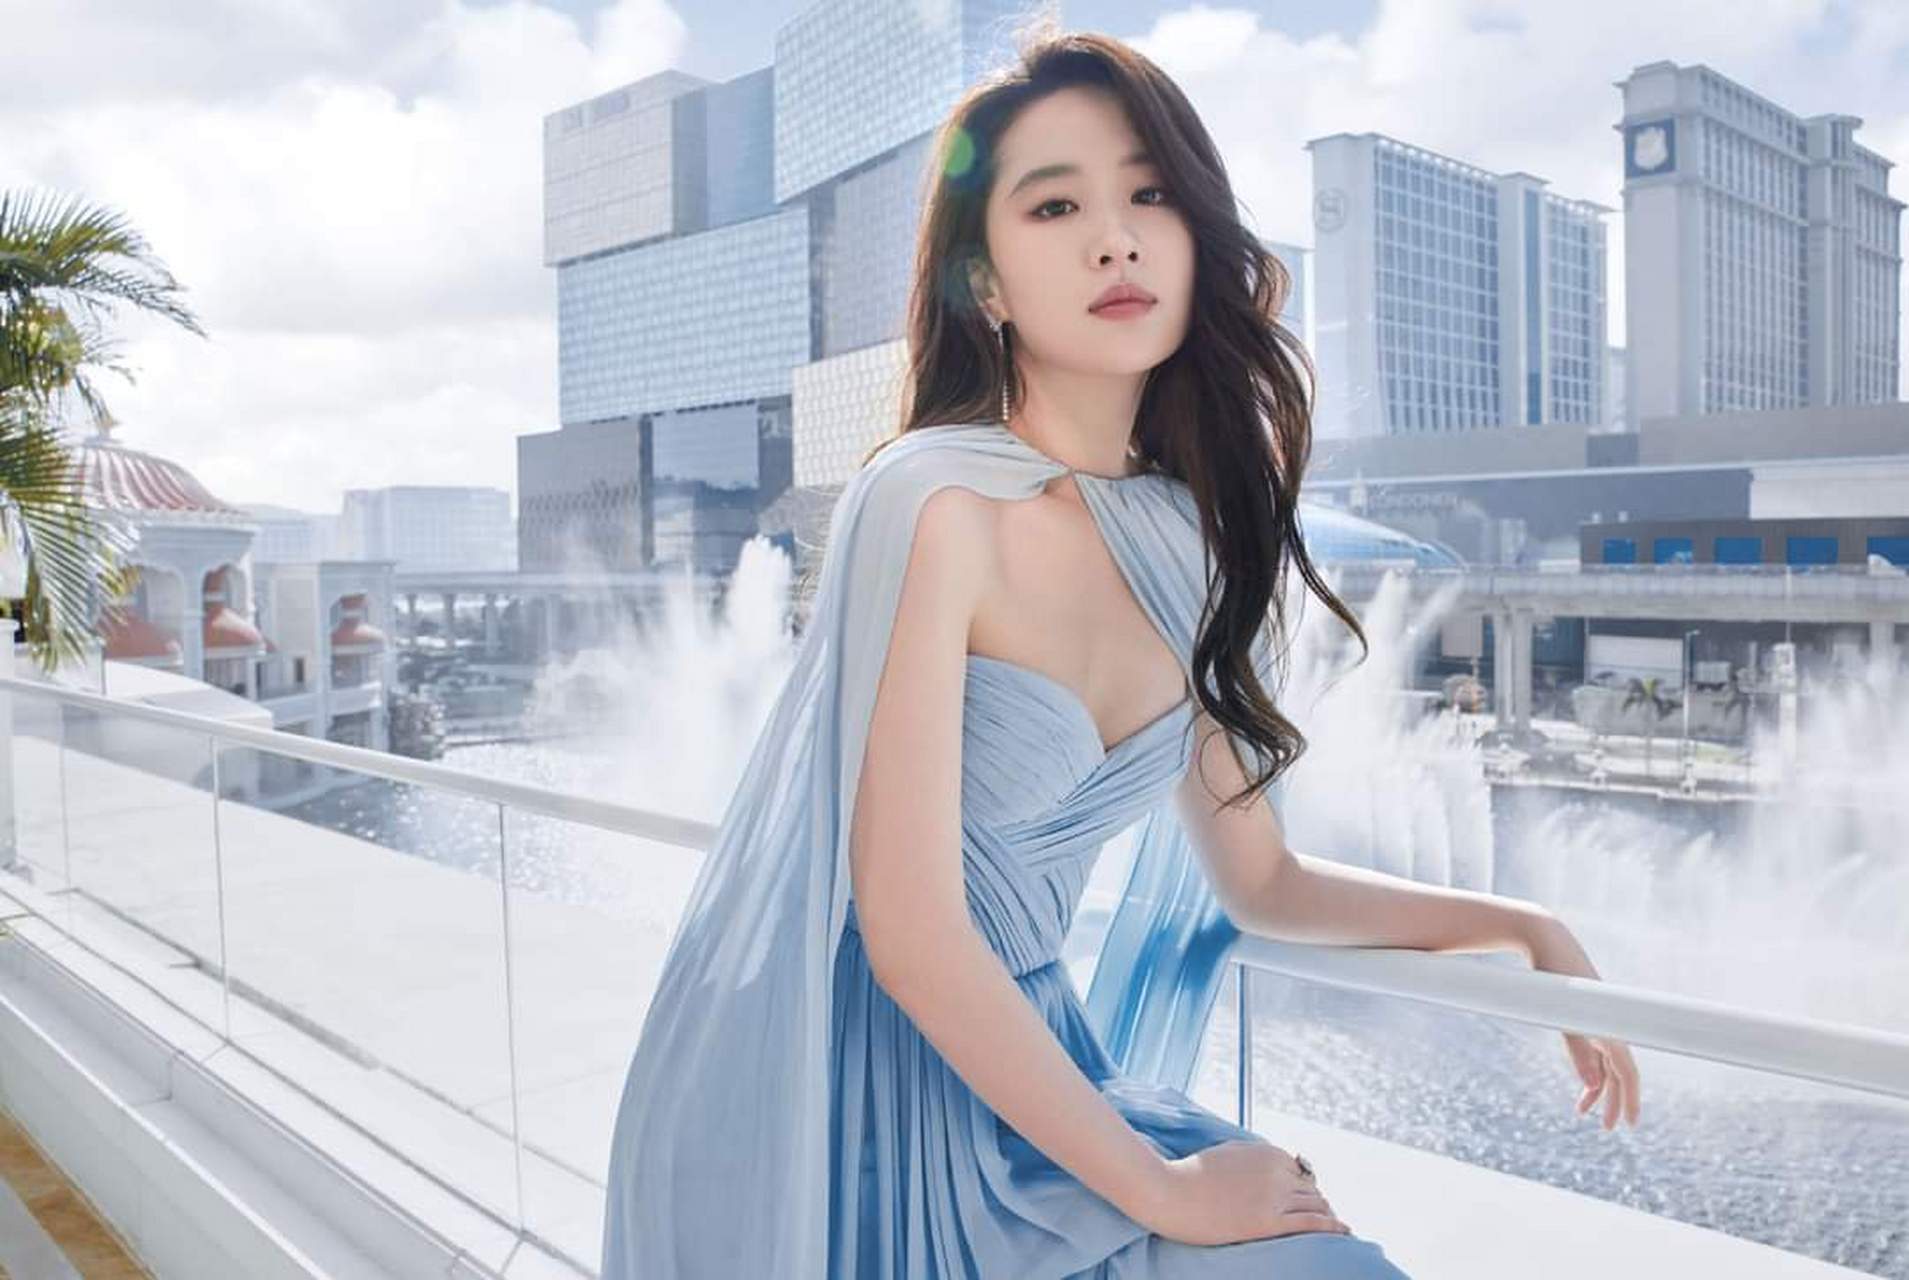 刘亦菲,一个典雅优美的女神,她的美丽不仅仅在于她的外貌,更在于她